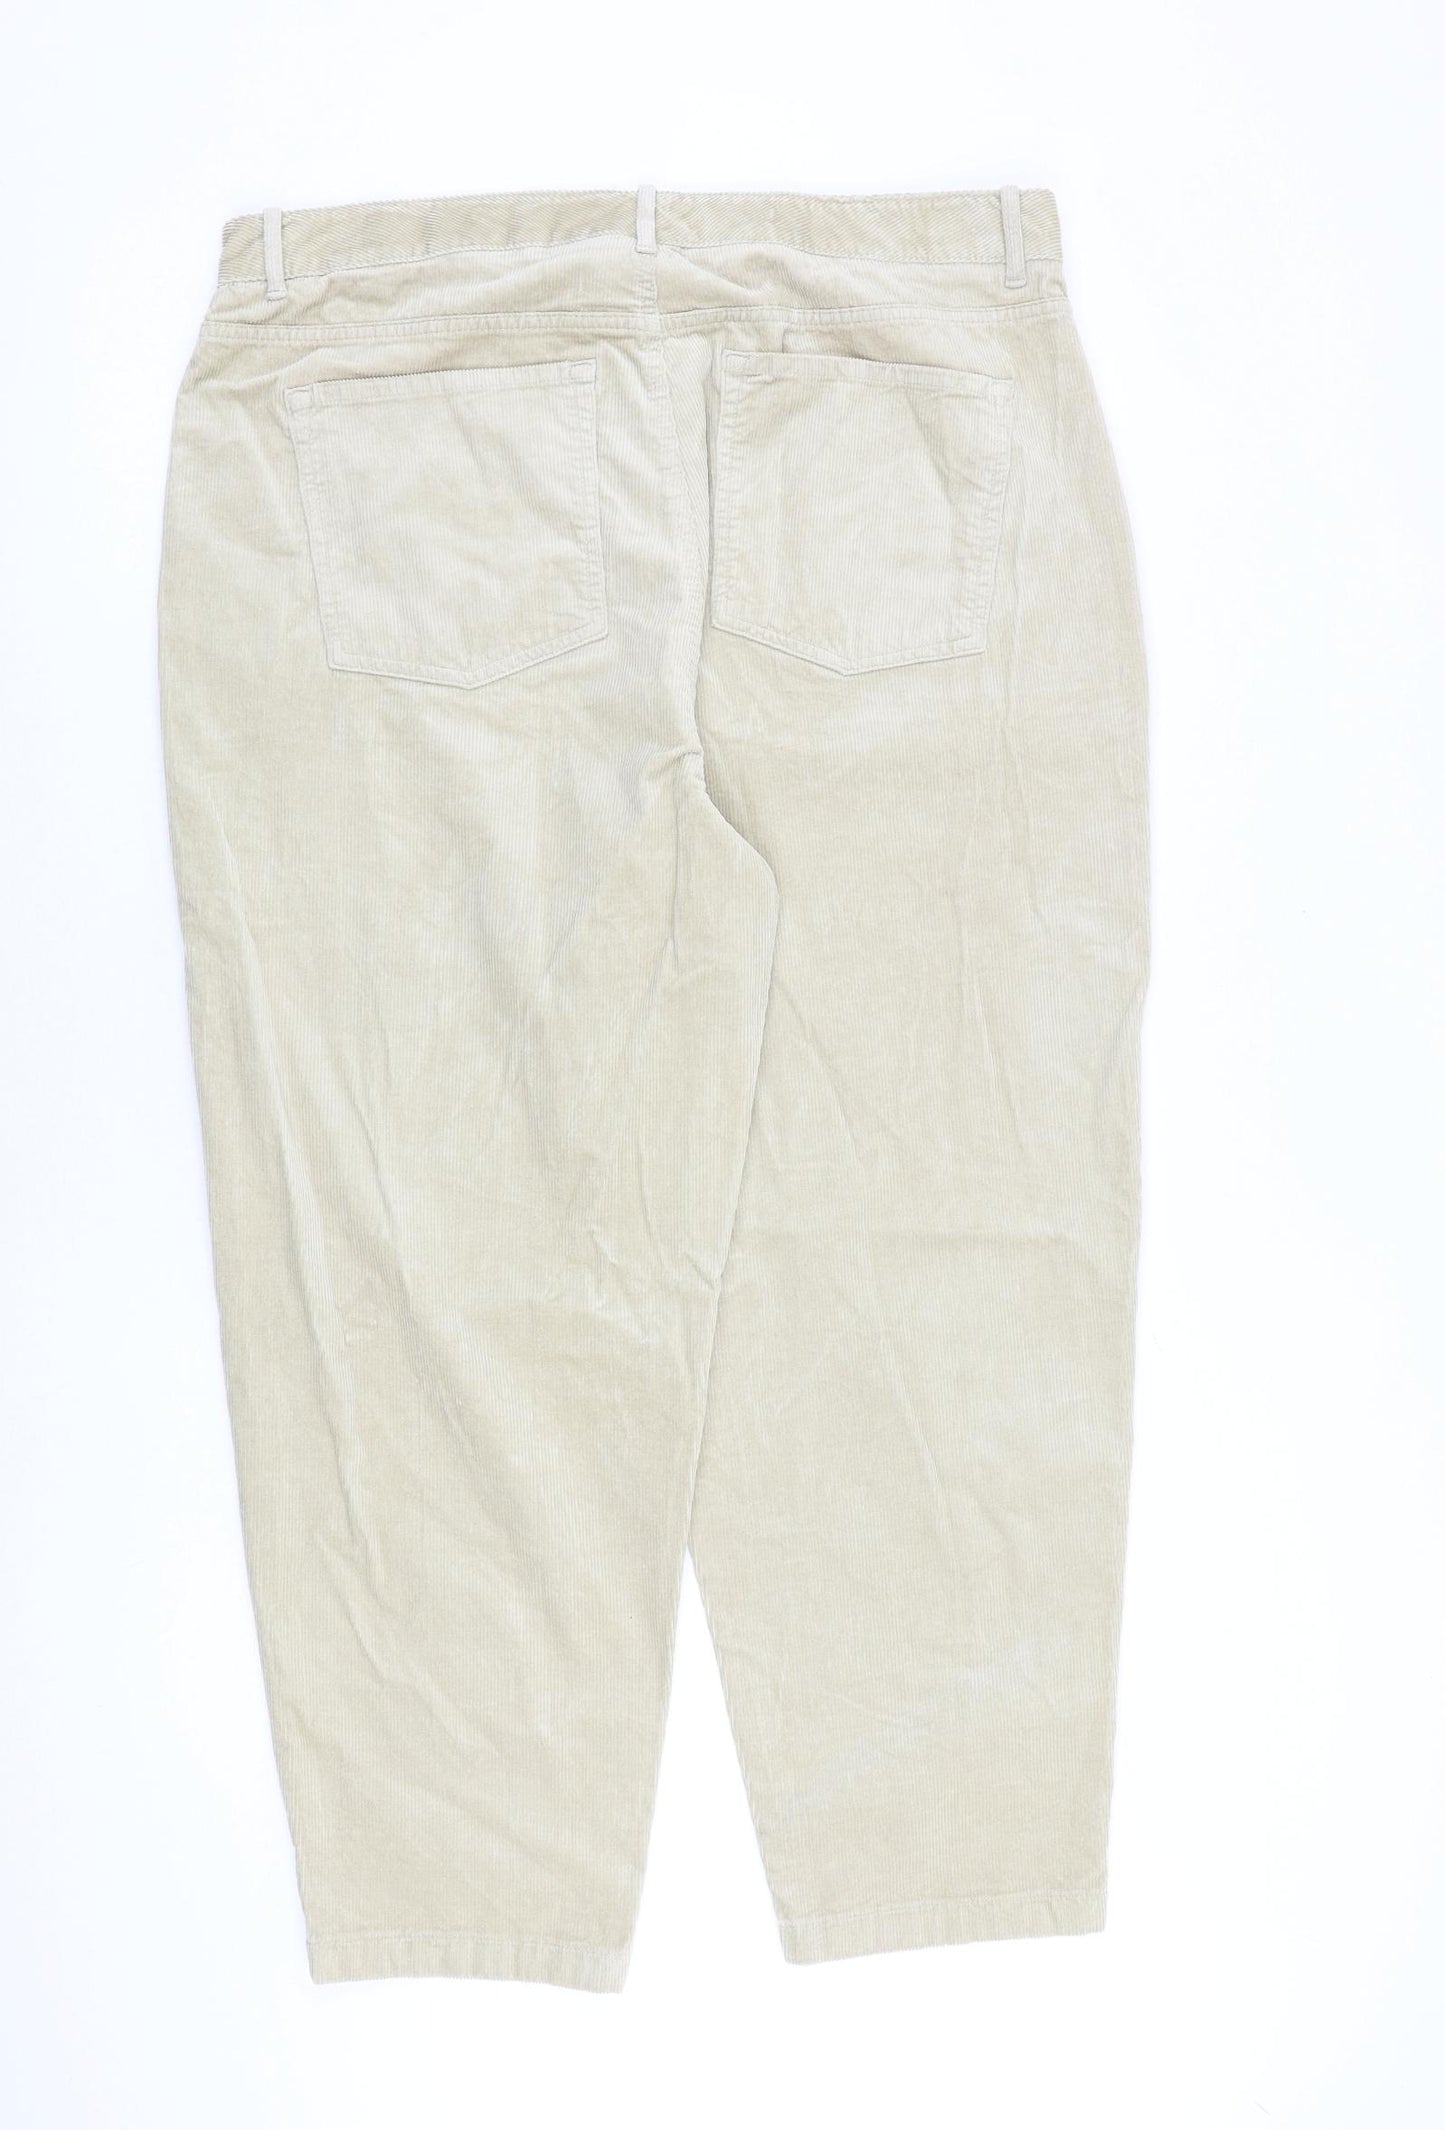 Per Una Womens Beige Cotton Trousers Size 18 L28 in Regular Zip